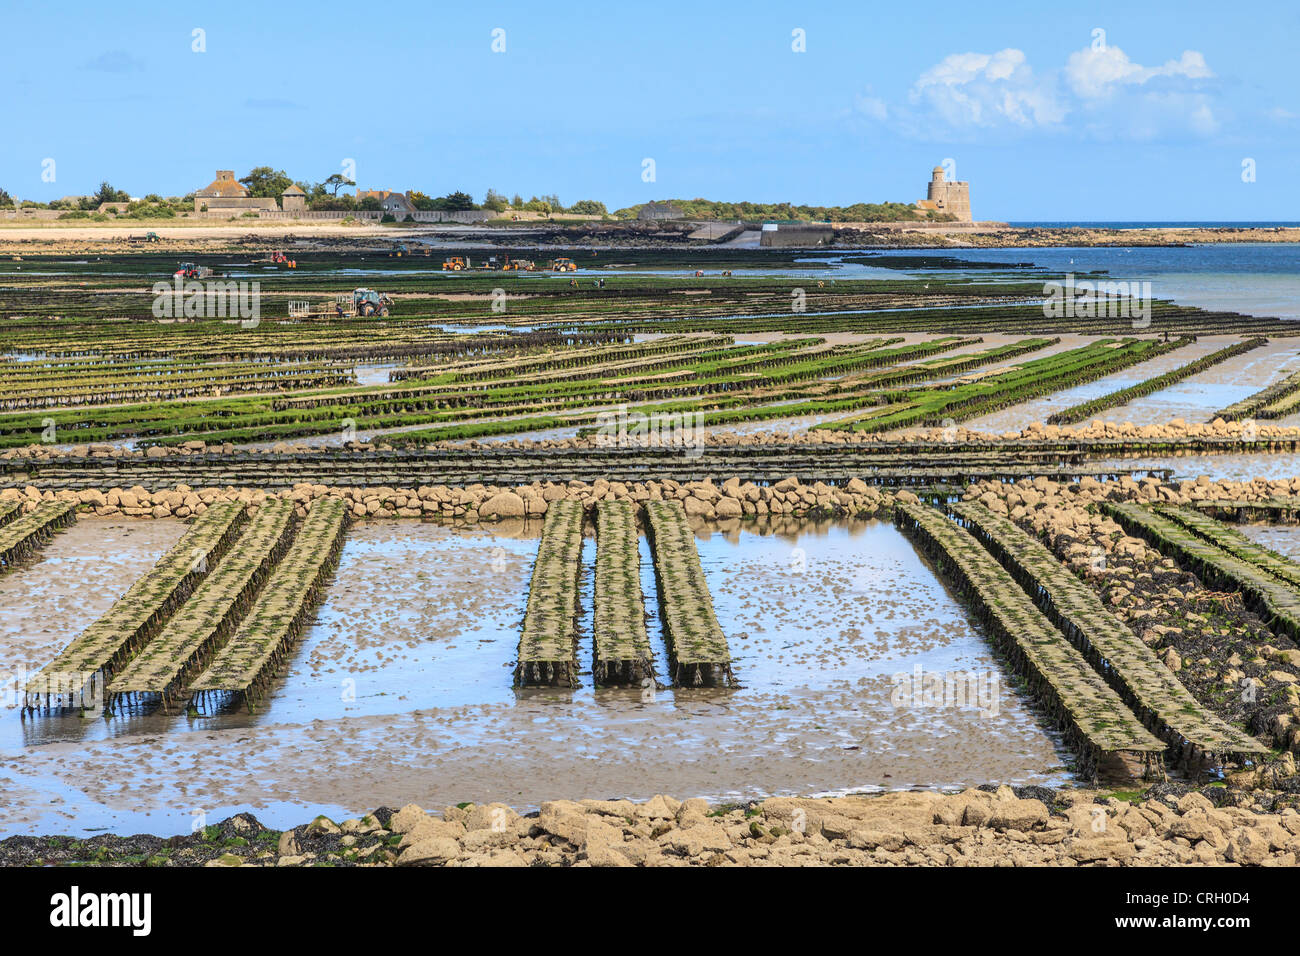 Les parcs à huîtres pour lesquels le port de pêche de St-Vaast-La-Hougue, Normandie, France, est célèbre Banque D'Images